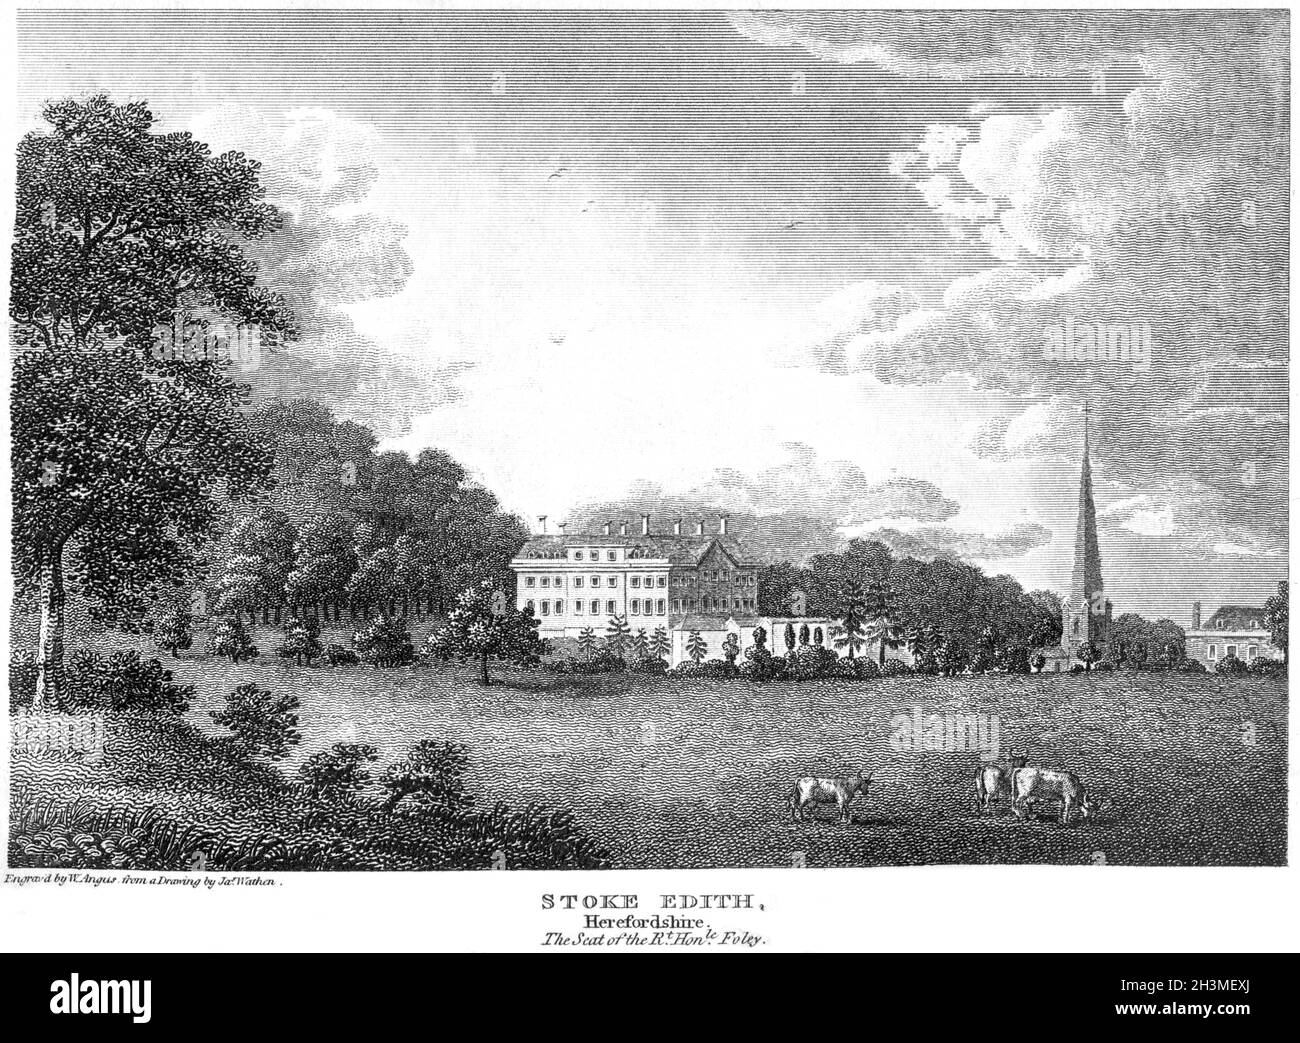 Un'incisione di Stoke Edith (la sede della Rt. Hon. Le Foley), Herefordshire Regno Unito ha scansionato ad alta risoluzione da un libro stampato nel 1812. Foto Stock